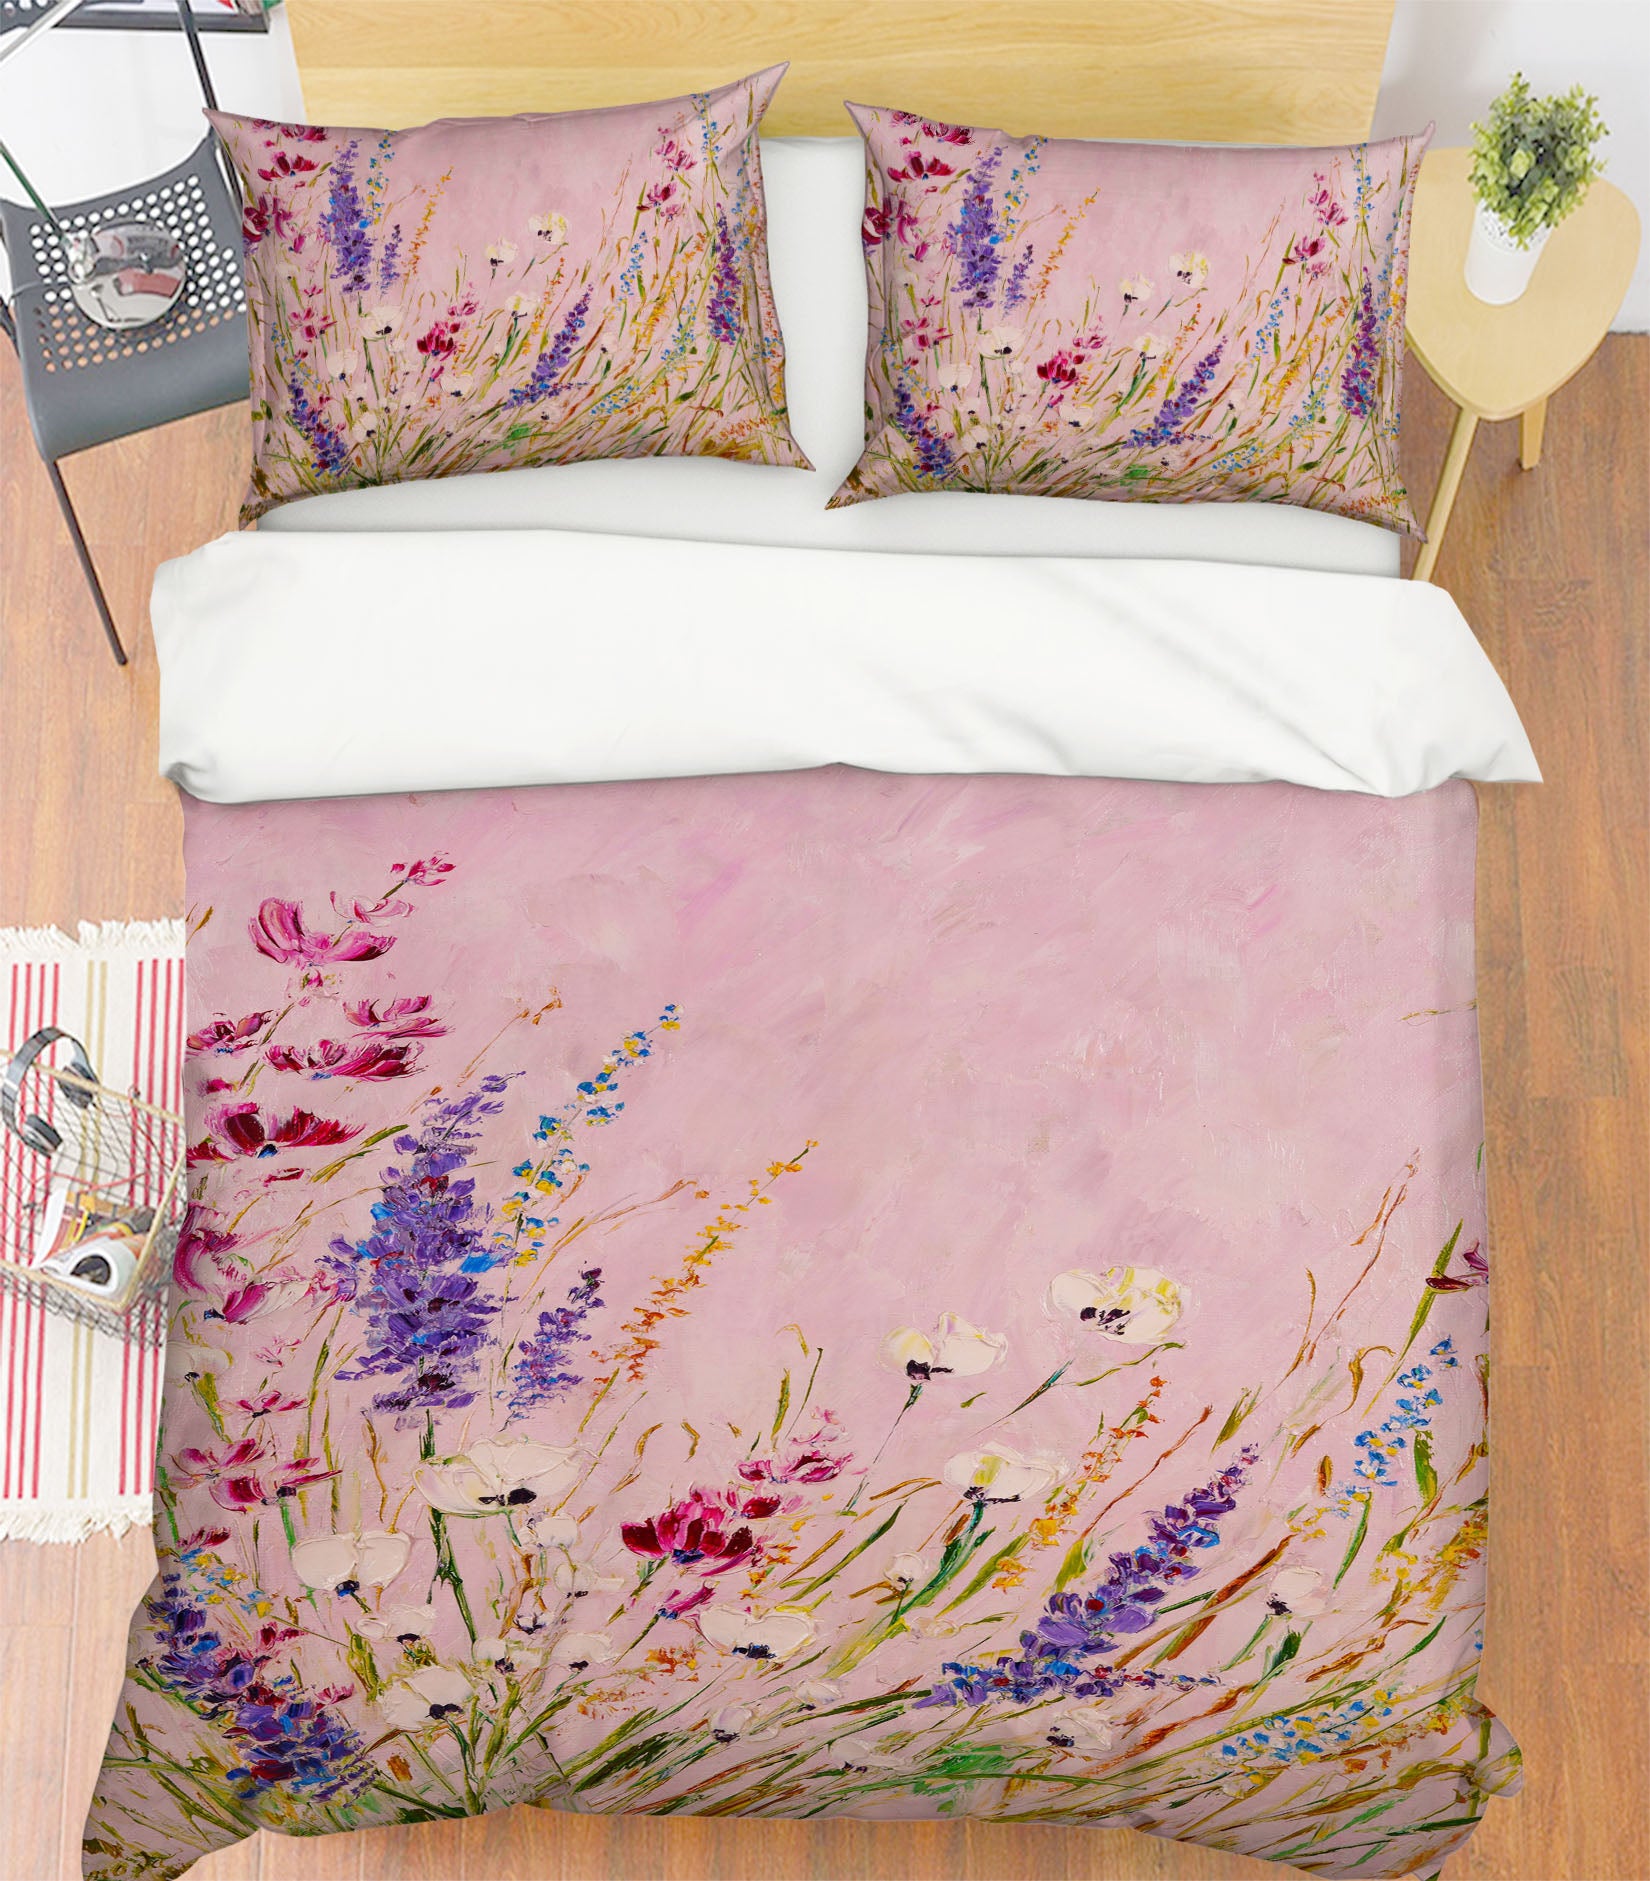 3D Lavender Flower 571 Skromova Marina Bedding Bed Pillowcases Quilt